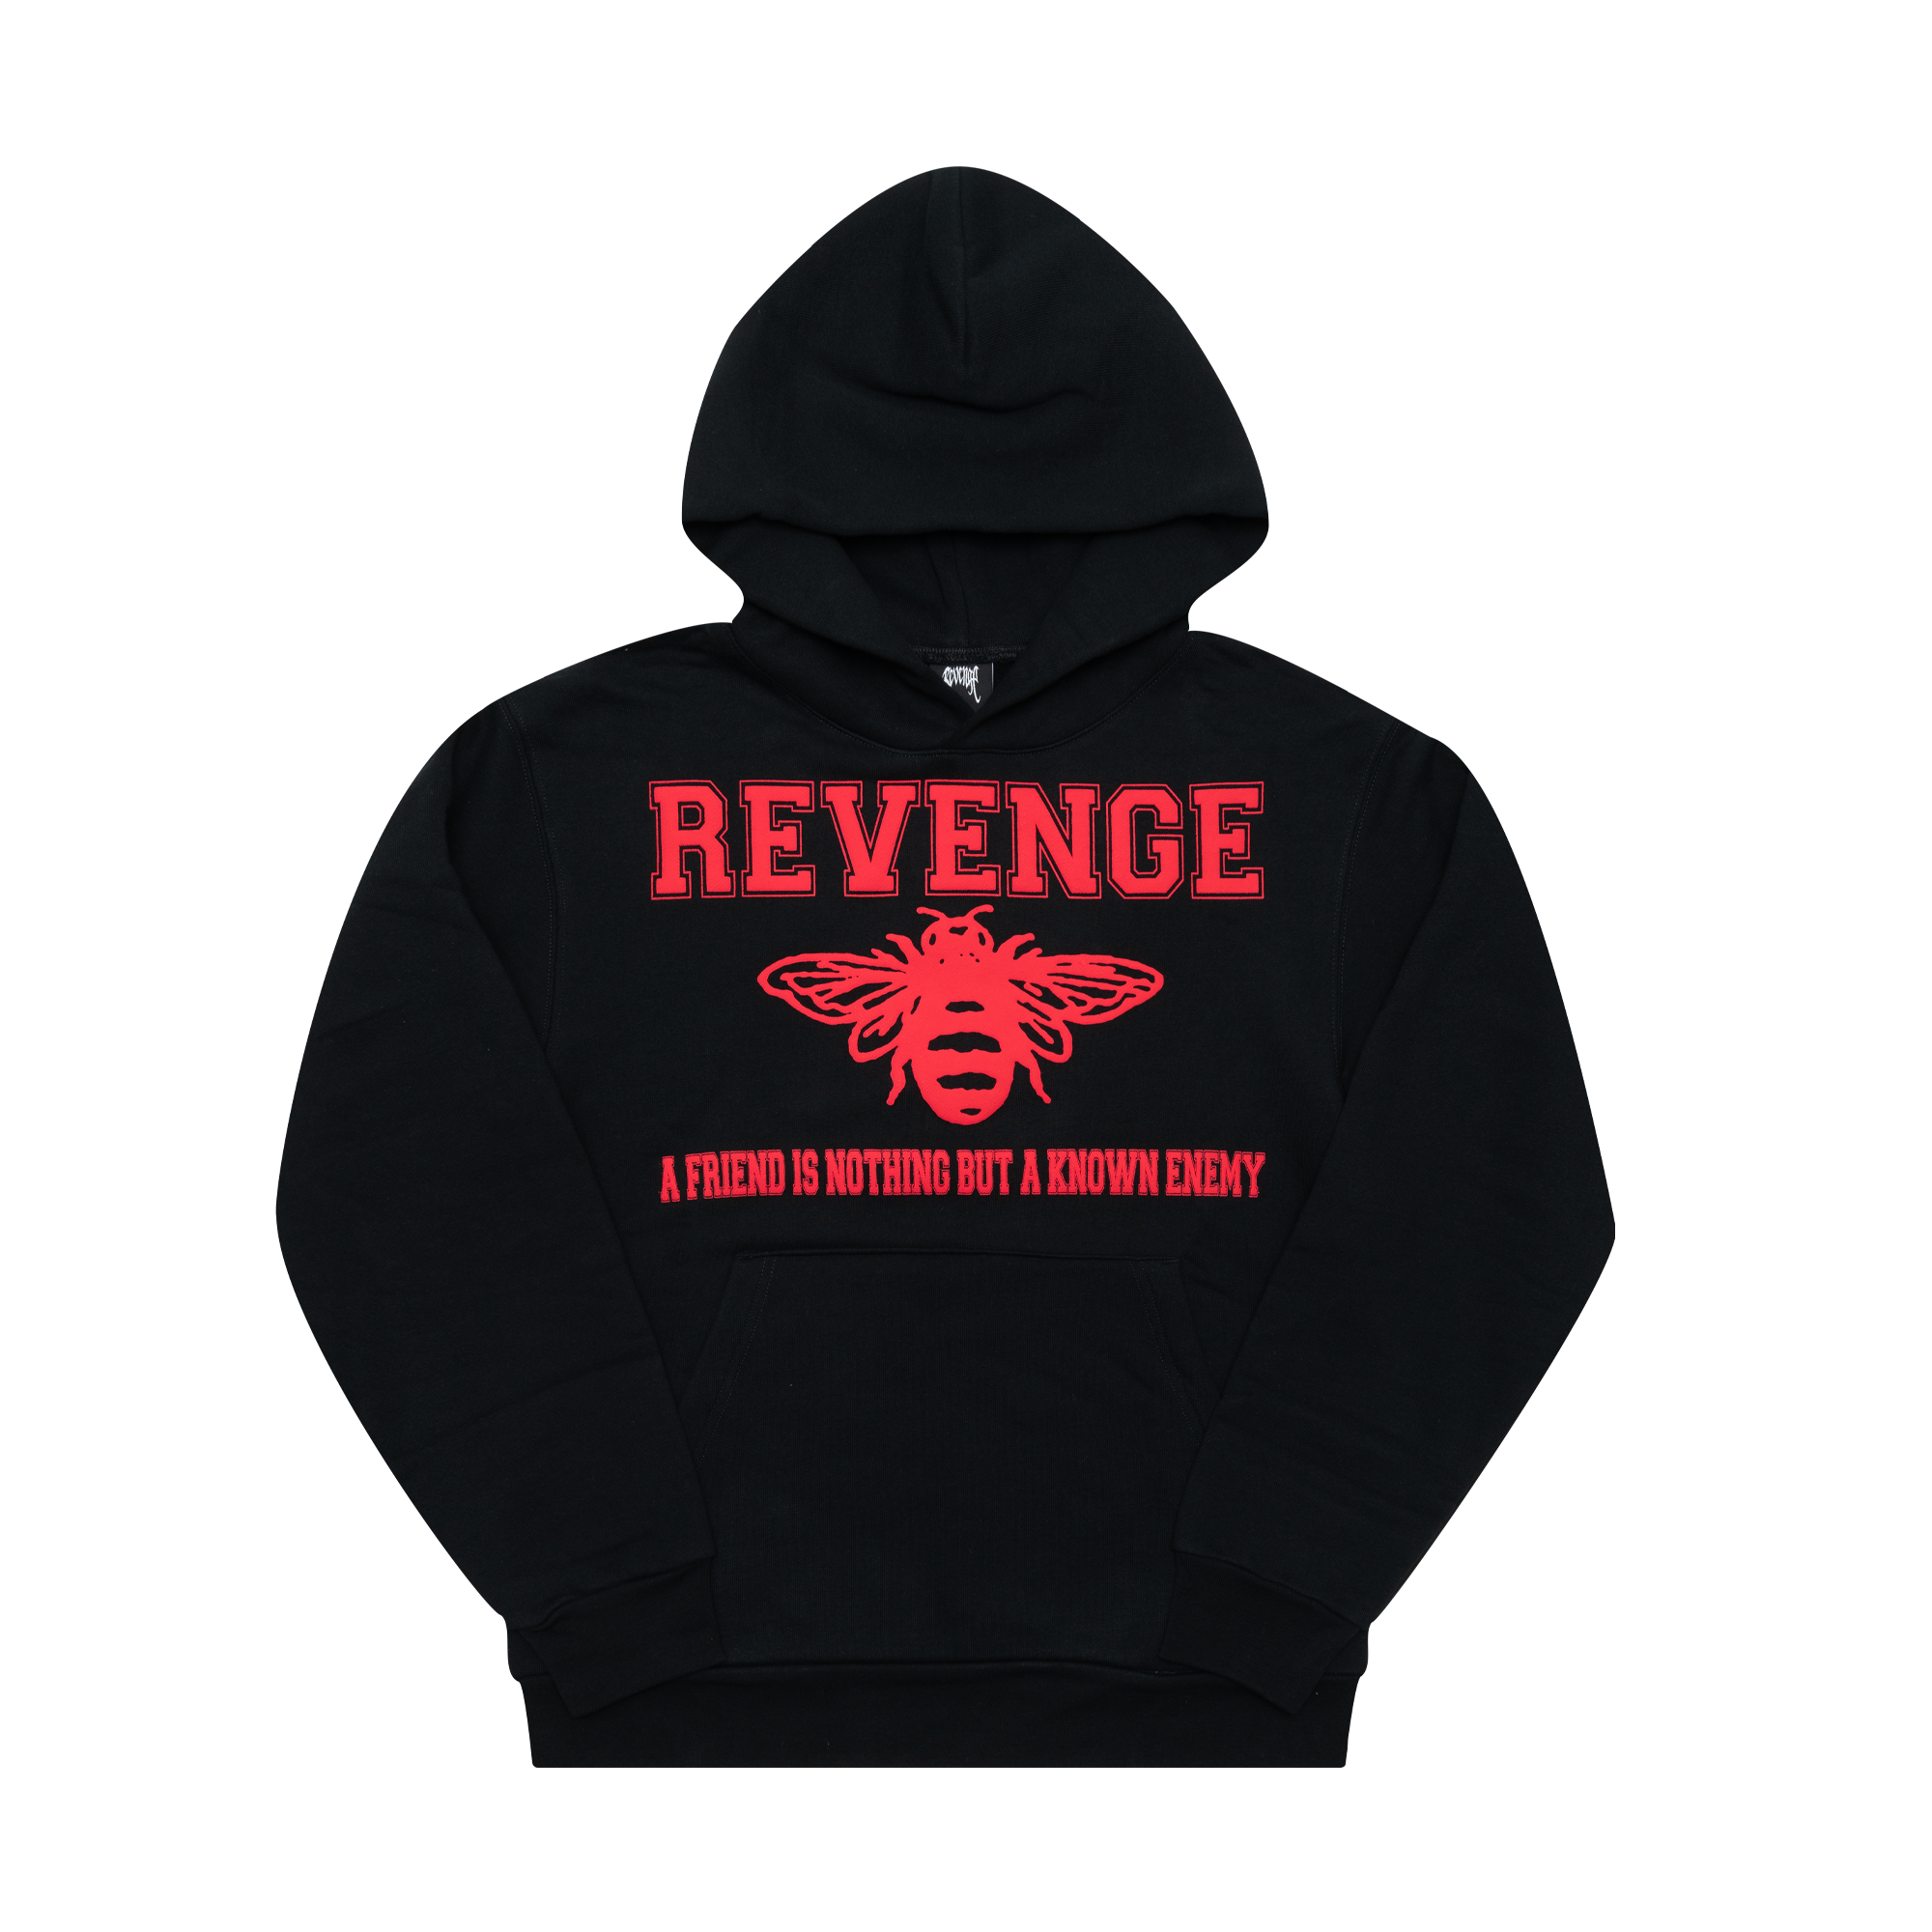 Revenge Clothing, Intimates & Sleepwear